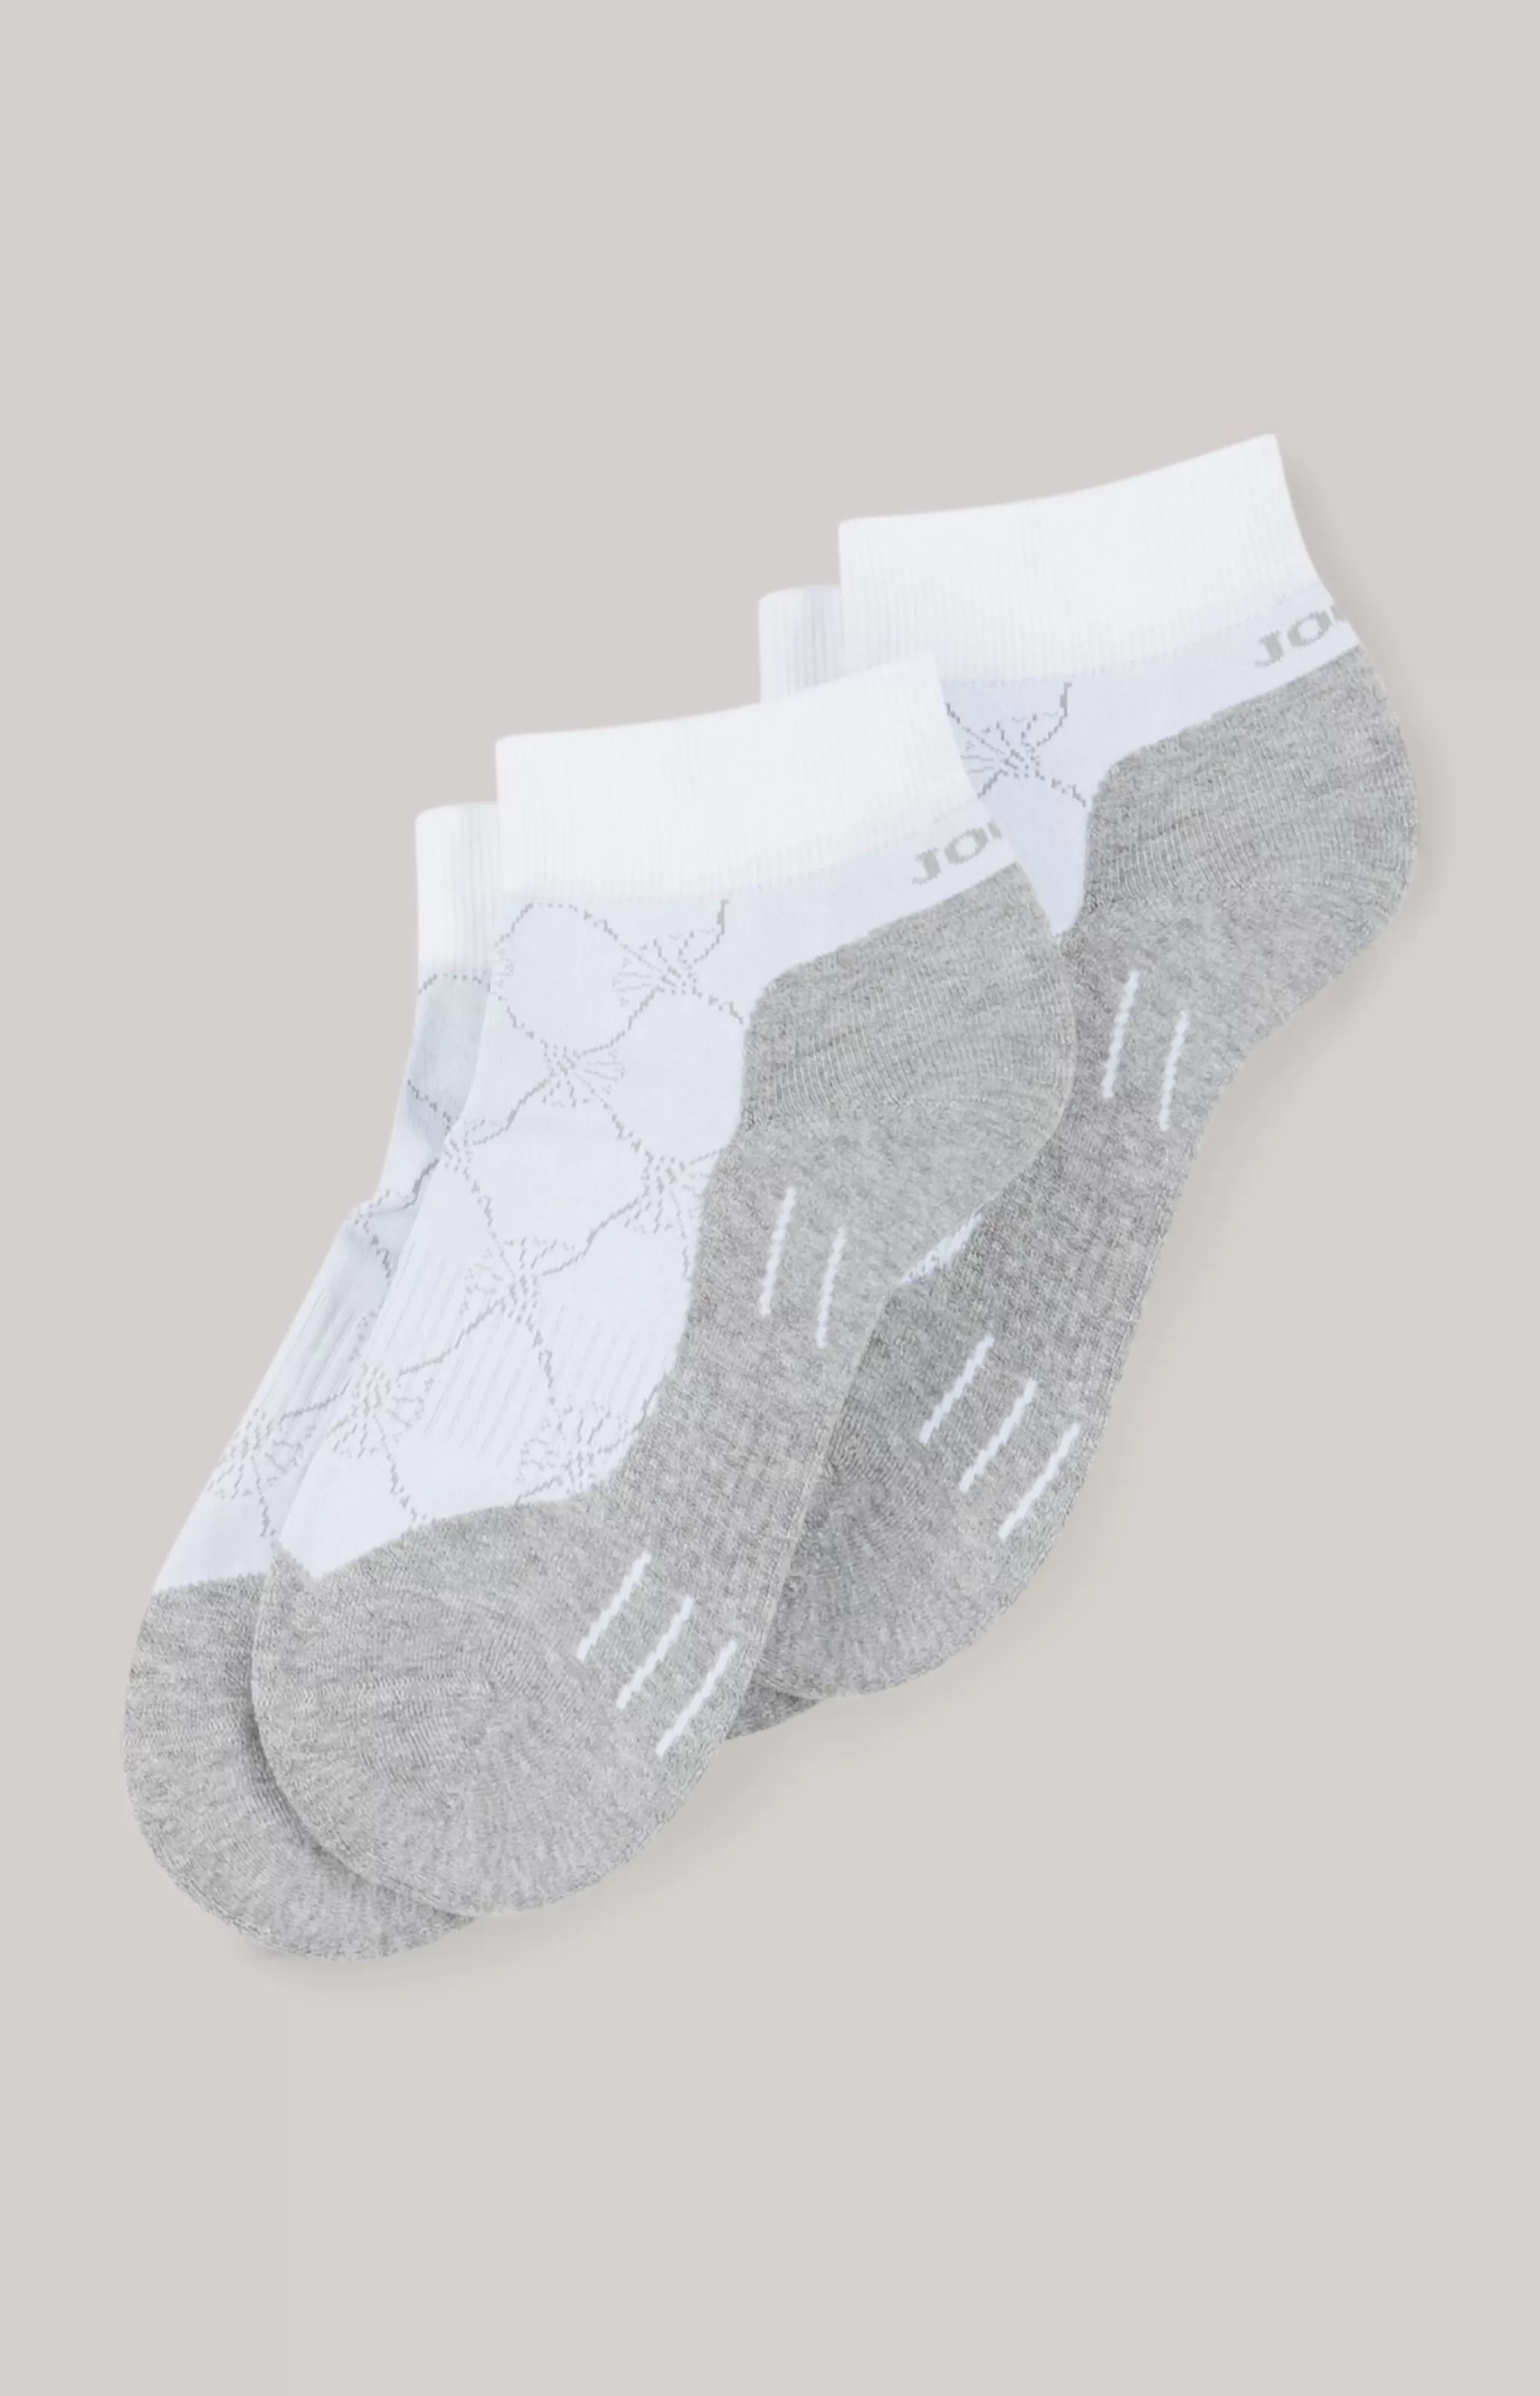 Socks*JOOP Socks 2-pack trainer socks in mottled grey/white